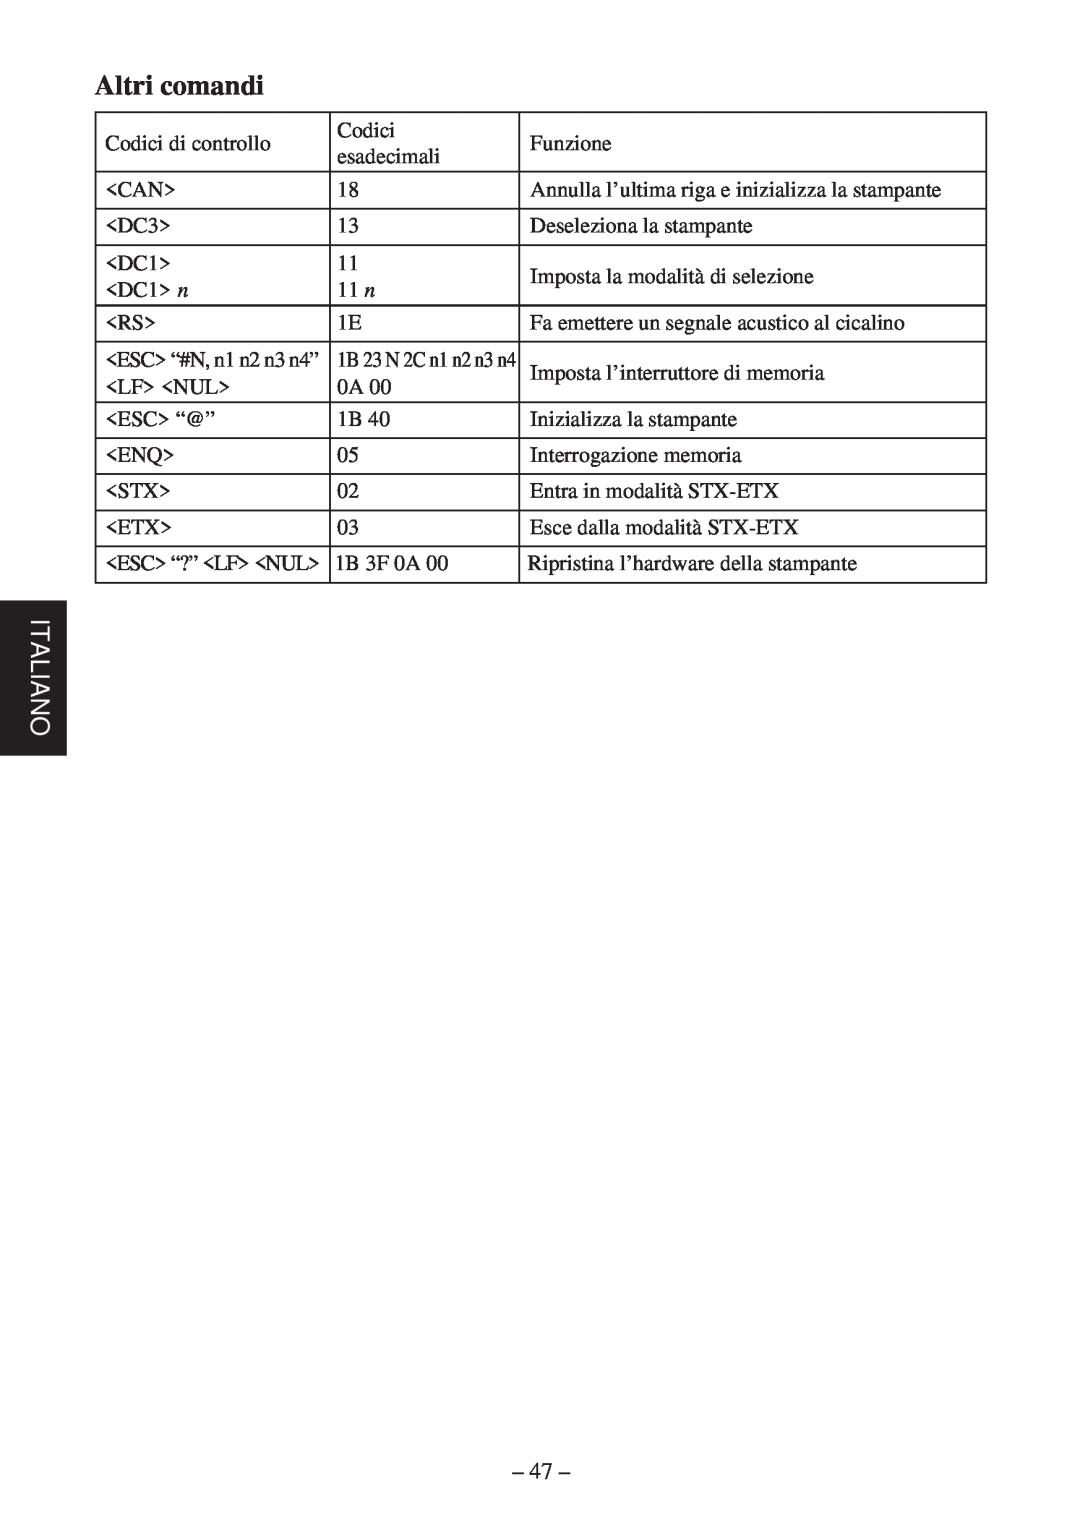 Star Micronics TSP400 Series user manual Altri comandi, Italiano 